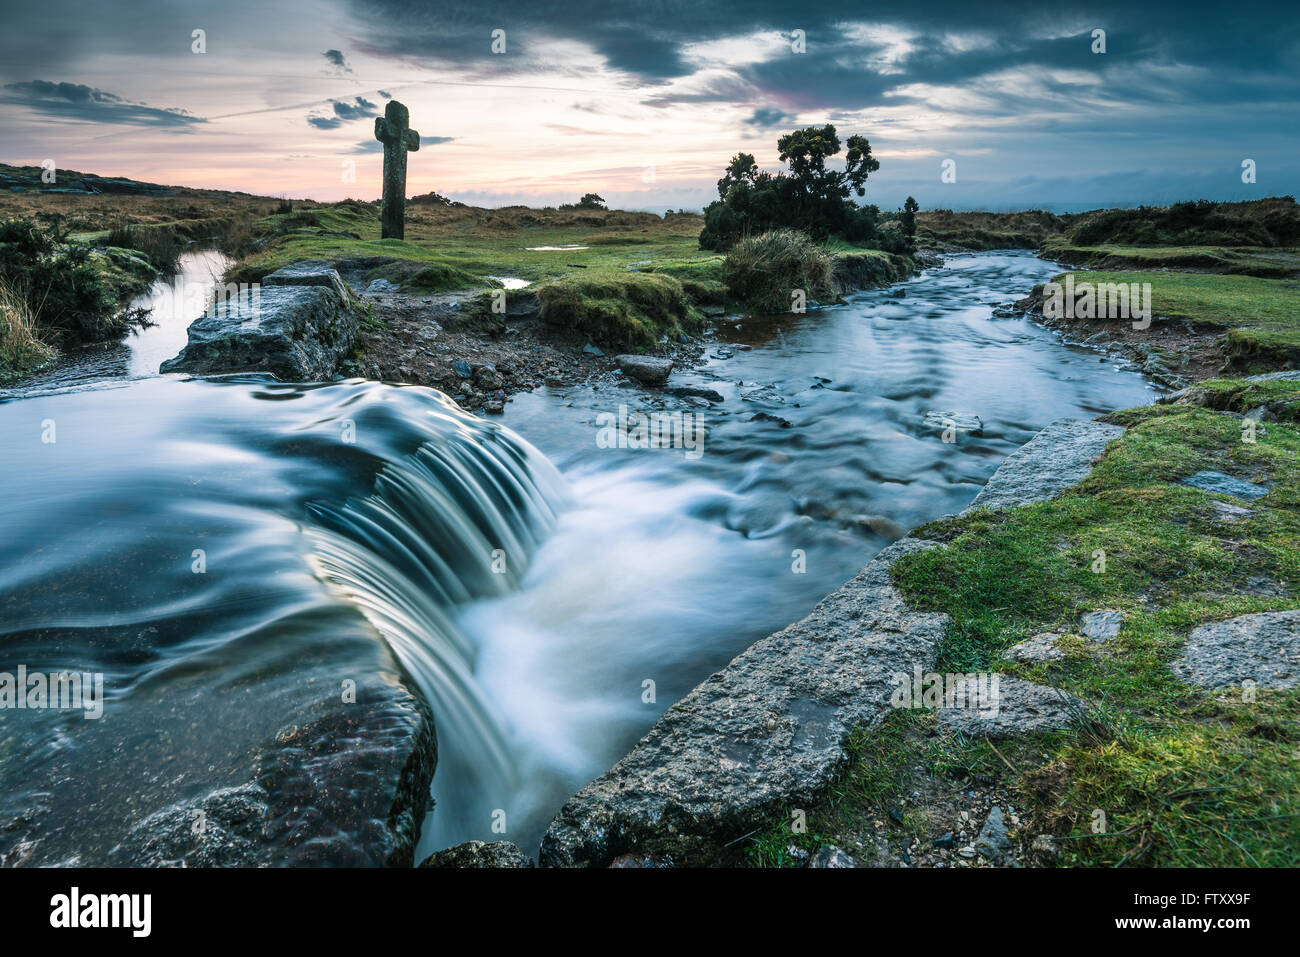 Water flowing in wild creek, ancient Cross in background in Dartmoor Park, UK Stock Photo